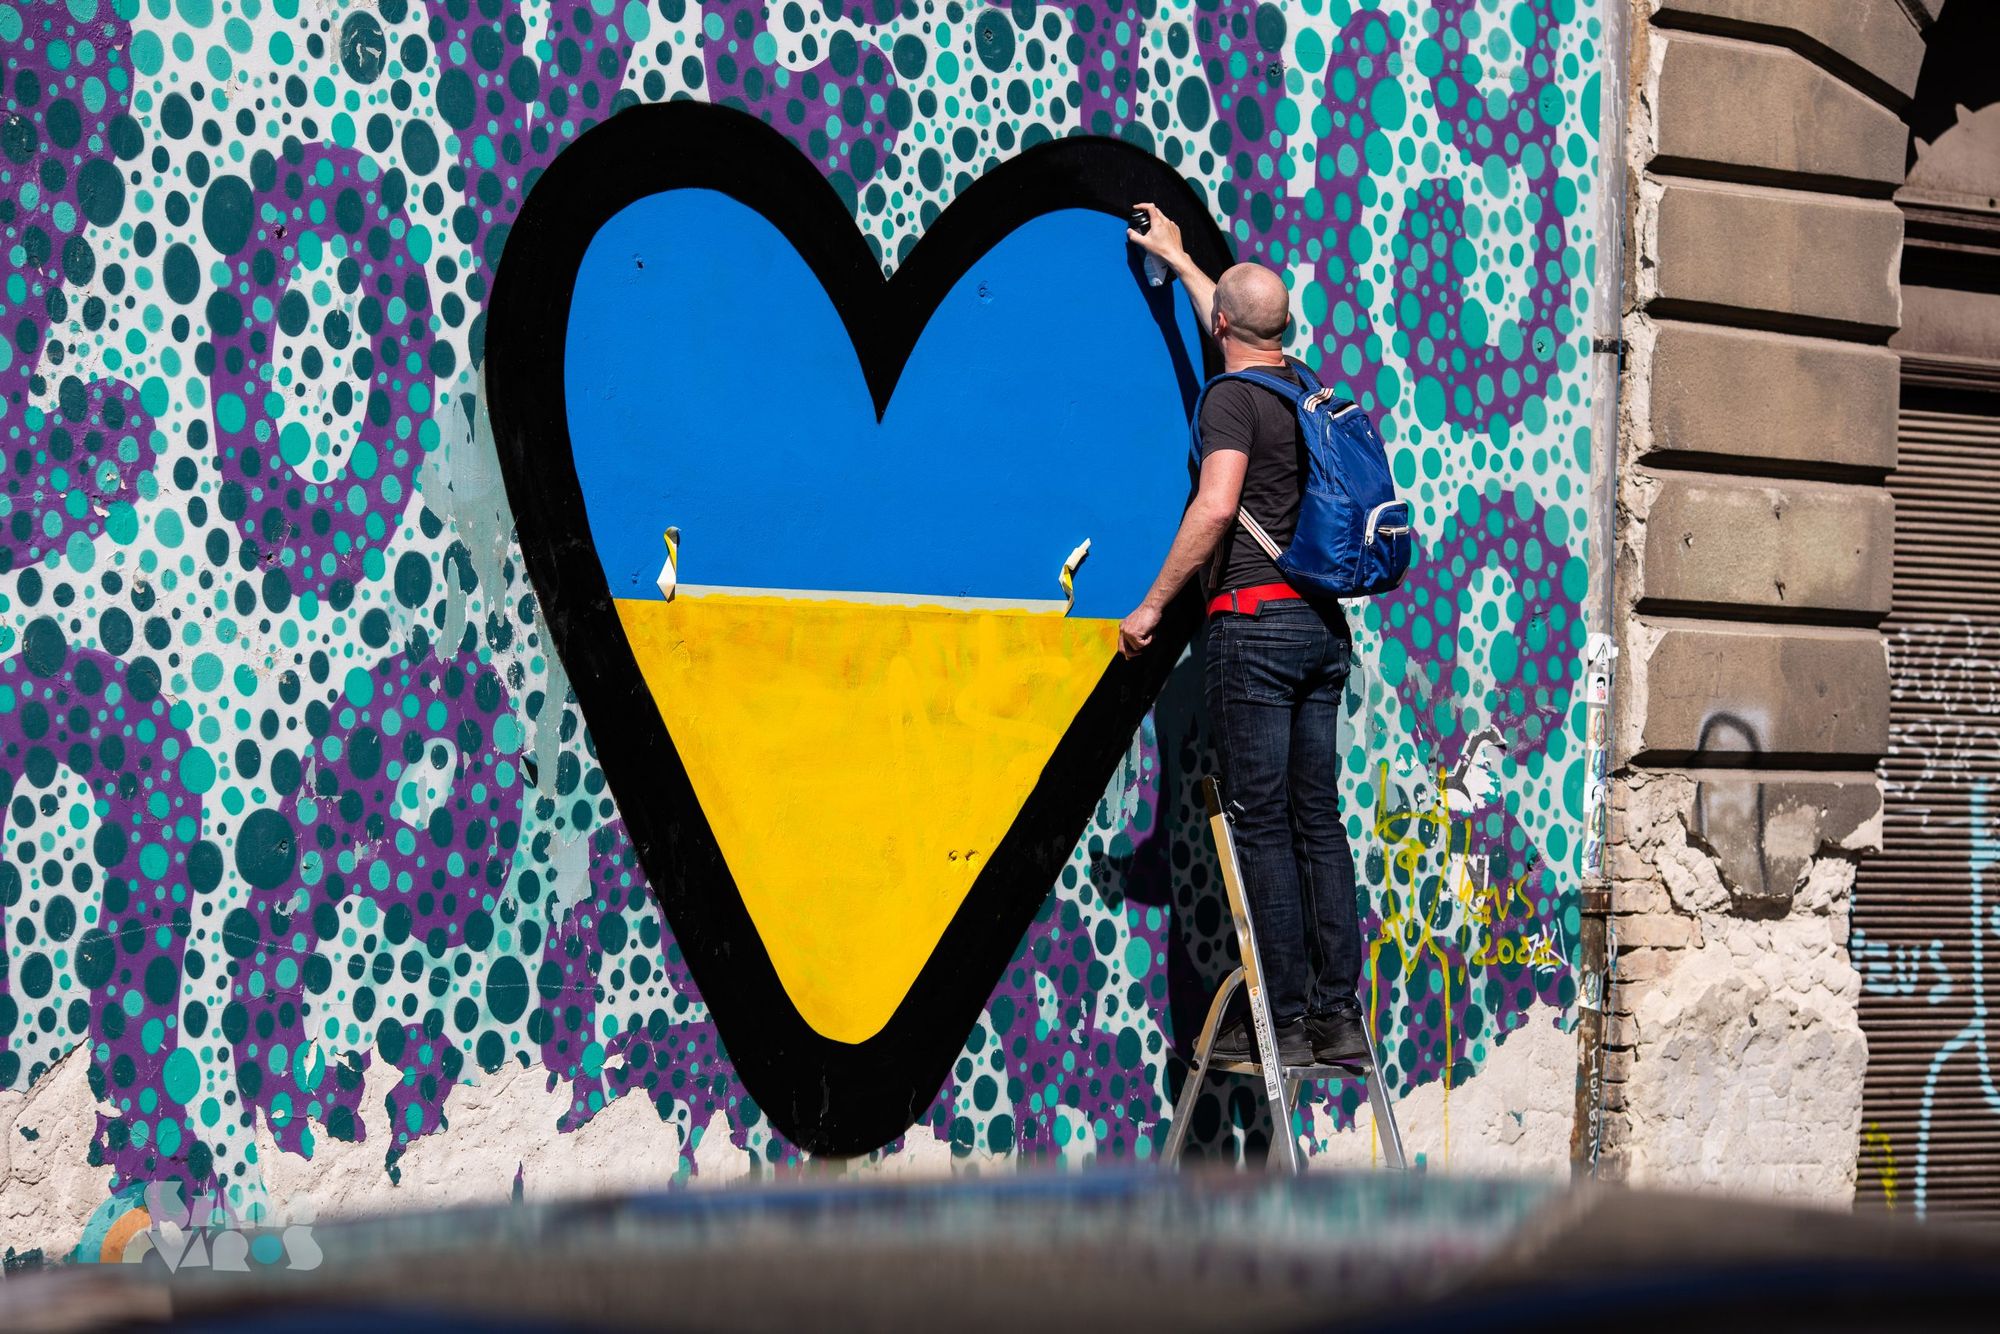 Szeresd a szomszédaidat! – az üzenete a régi, a külseje teljesen új Budapest egyik legnépszerűbb falfestményének